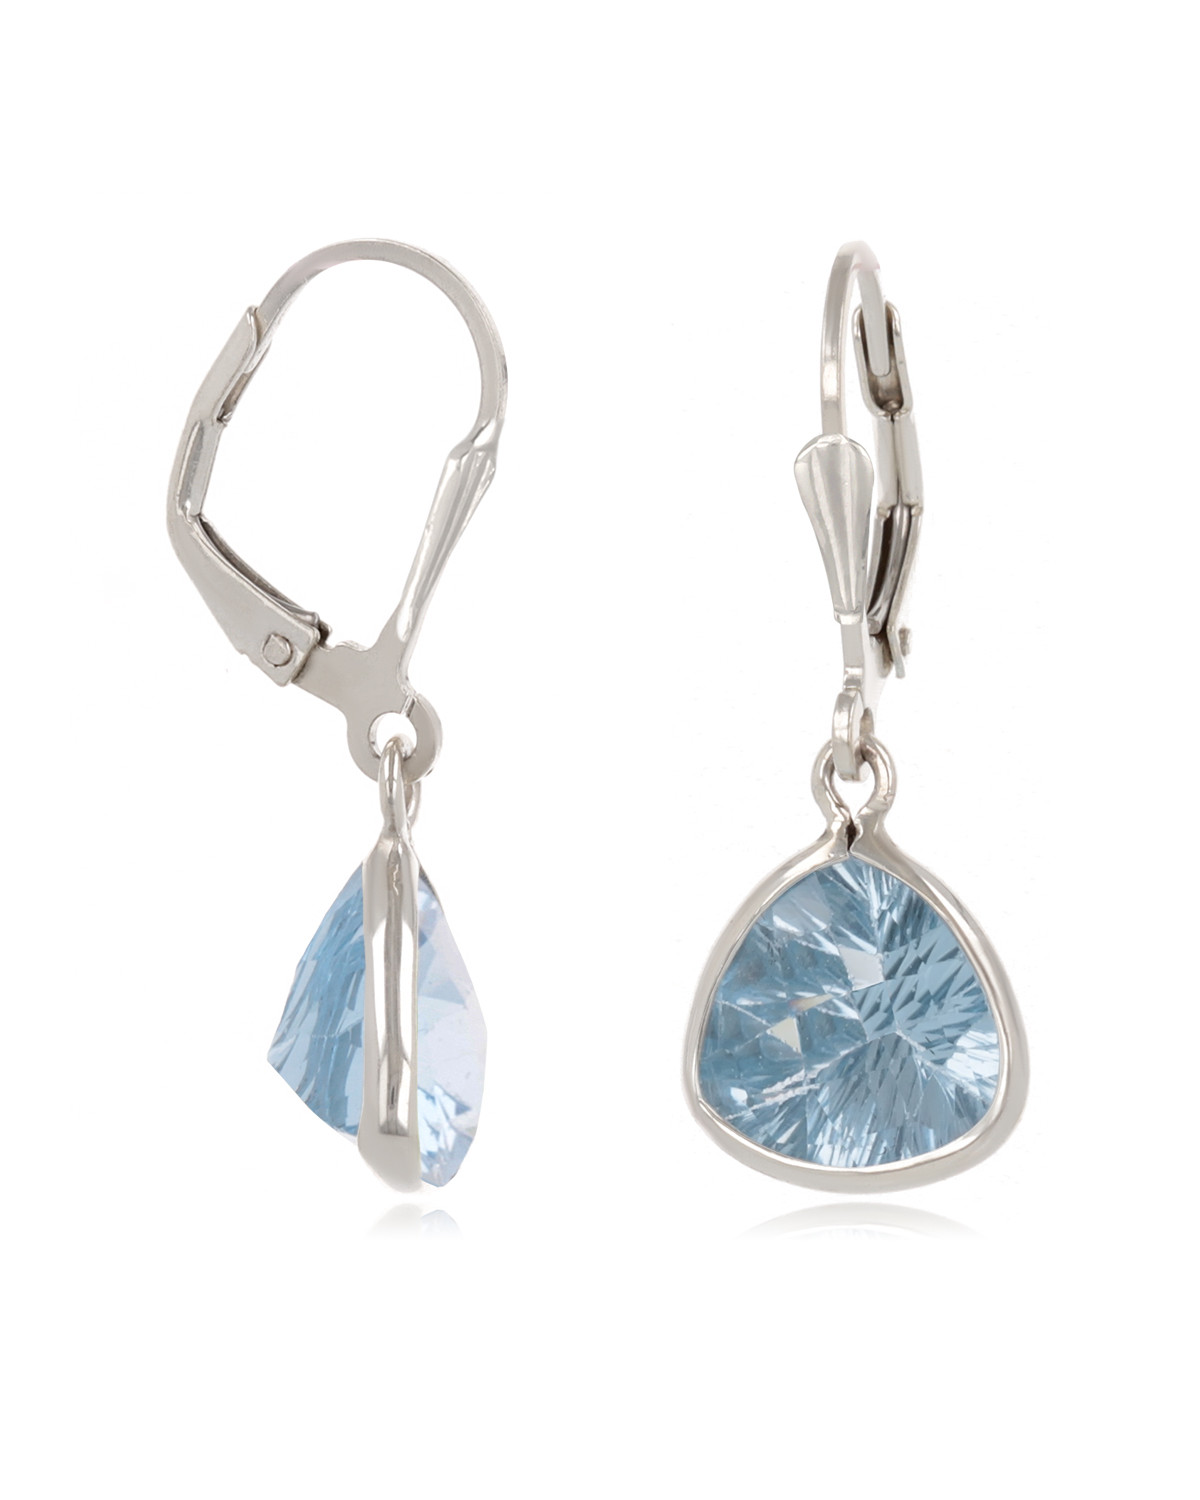 Pear-shaped Blue Topaz Earrings Set in Sterling Silver